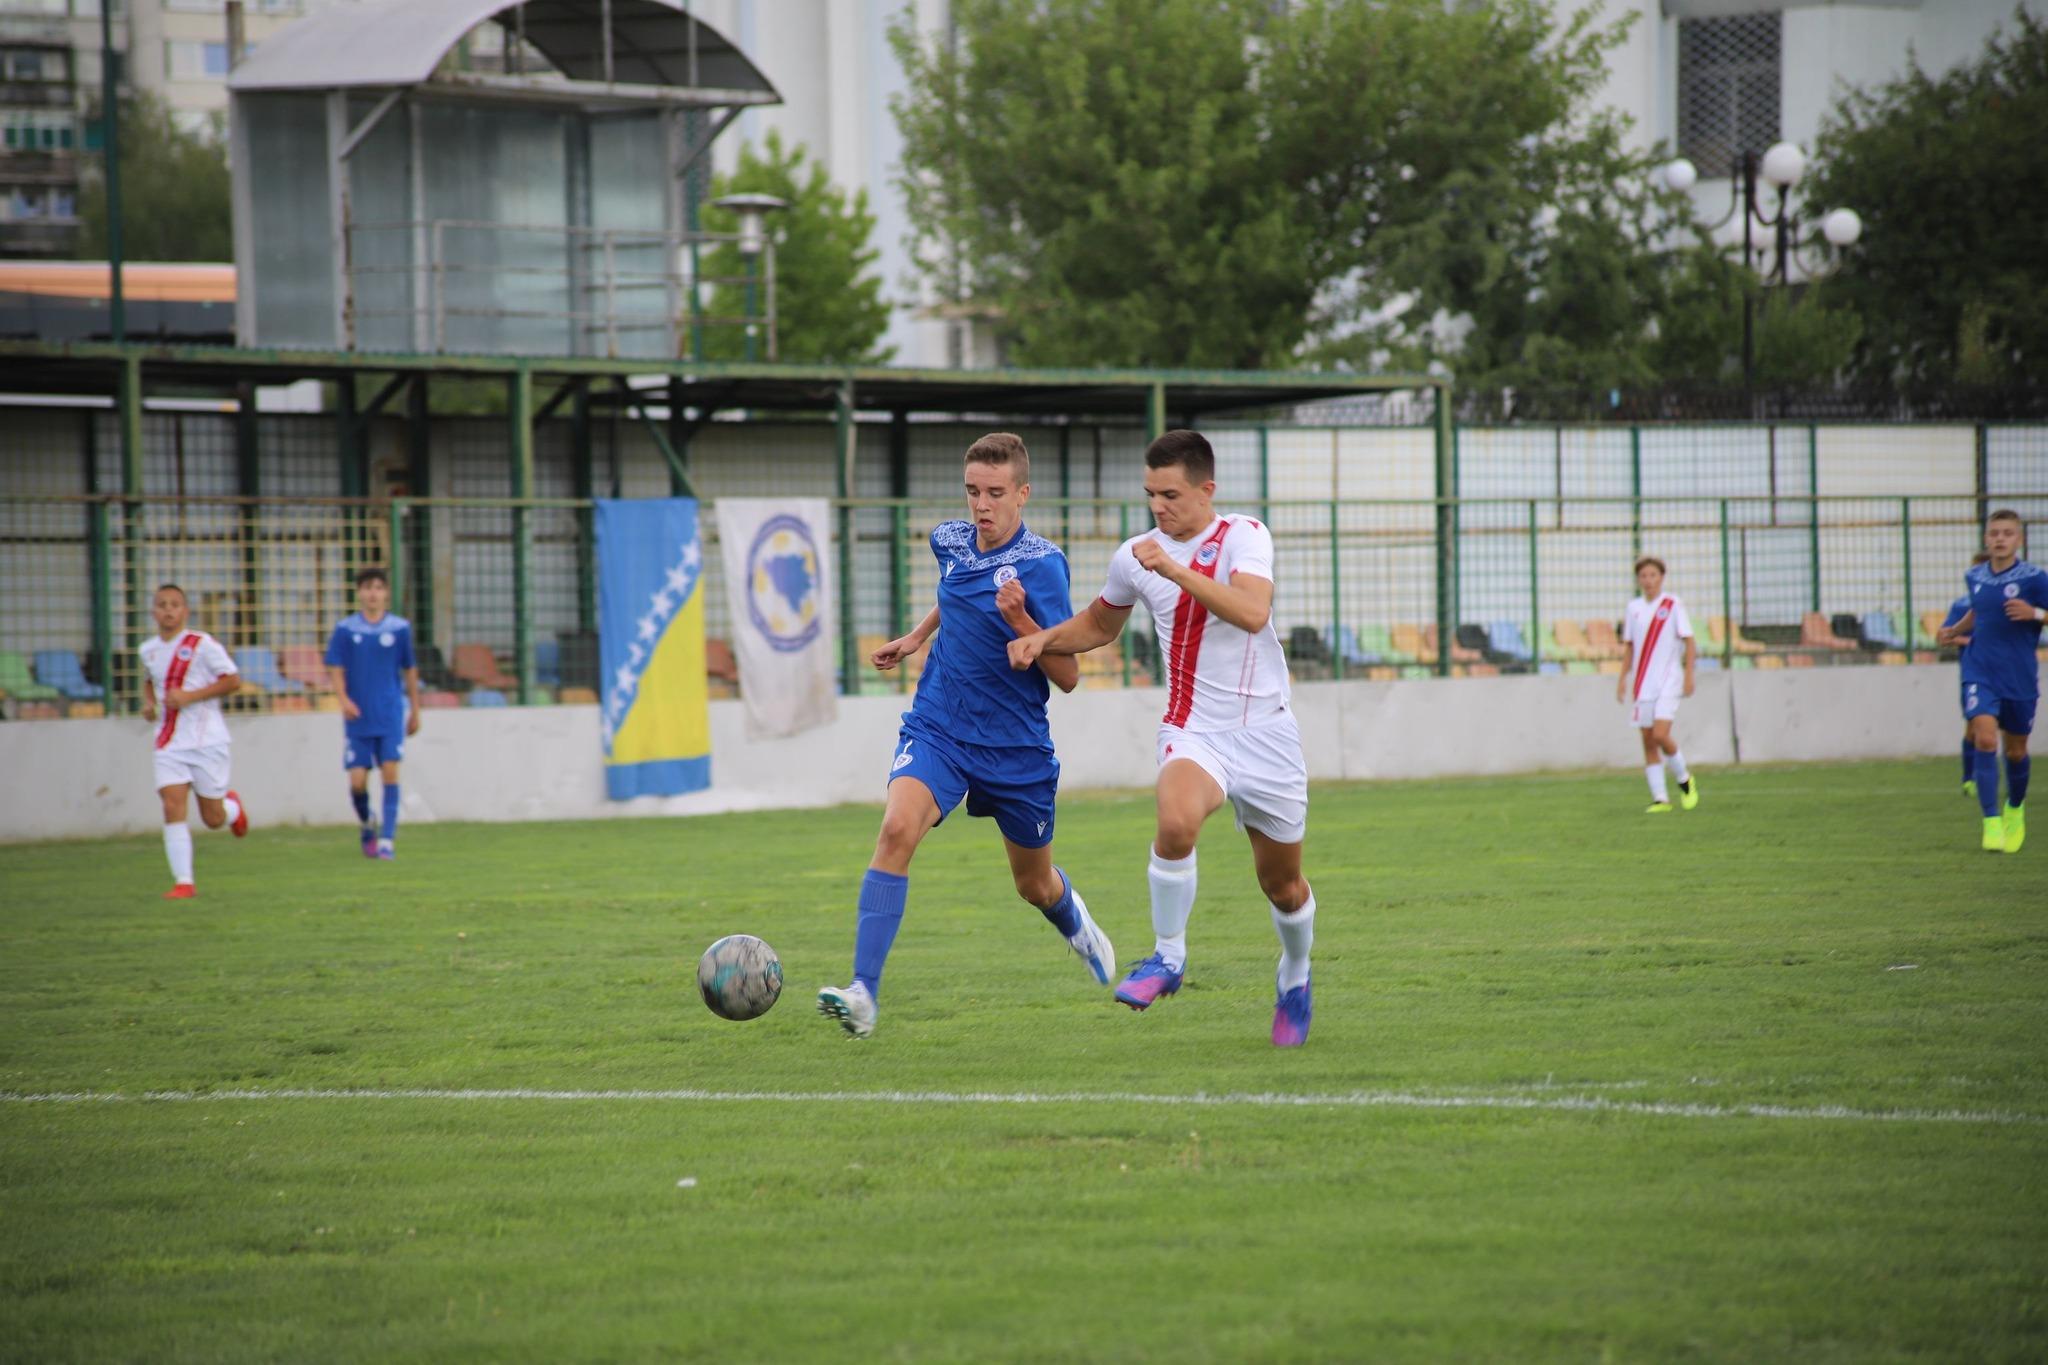 Odigrana prva utakmica omladinske Premijer lige FK “Željezničar” sa FK “Zrinjski”